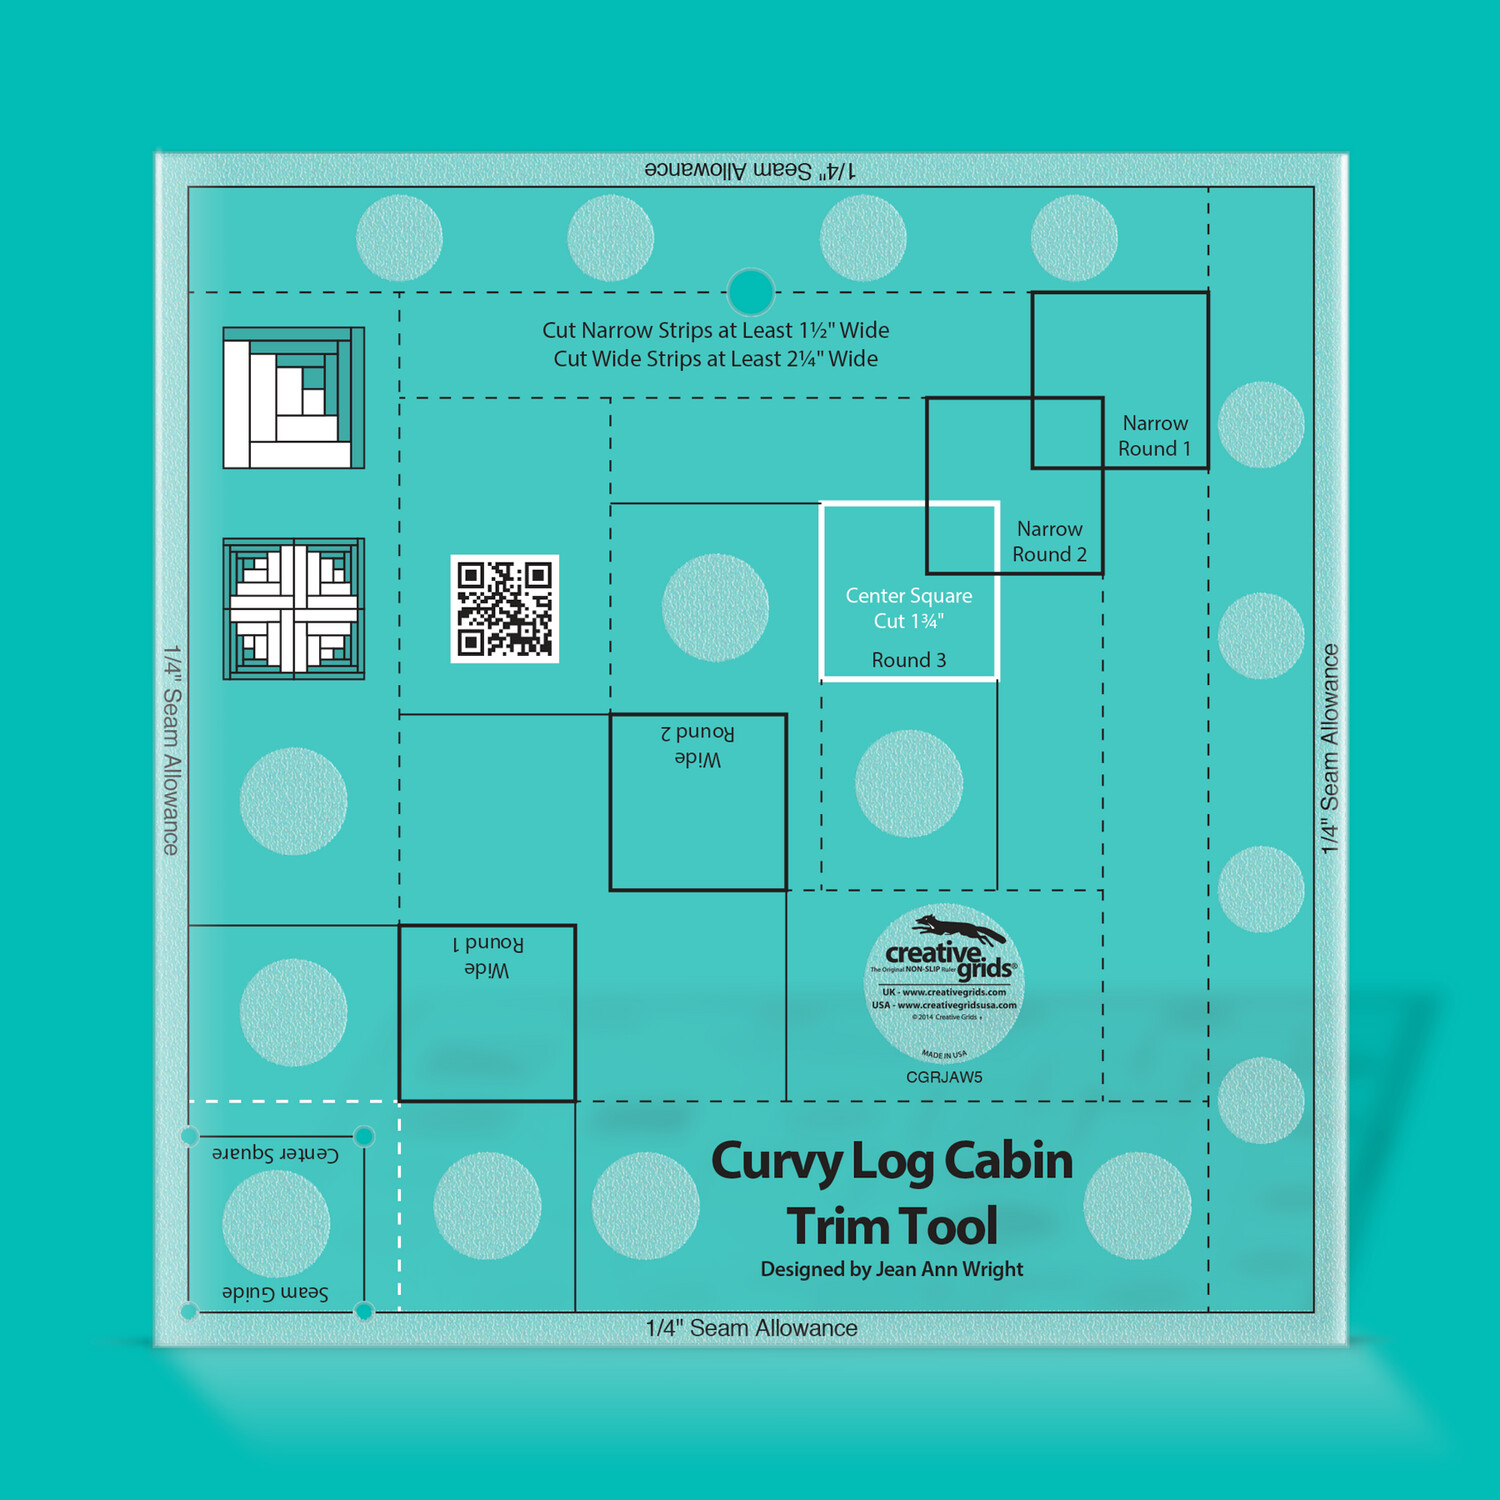 Creative Grids 8" Curvy Log Cabin Trim Tool Duo von Jean Ann Wright
| Non slip